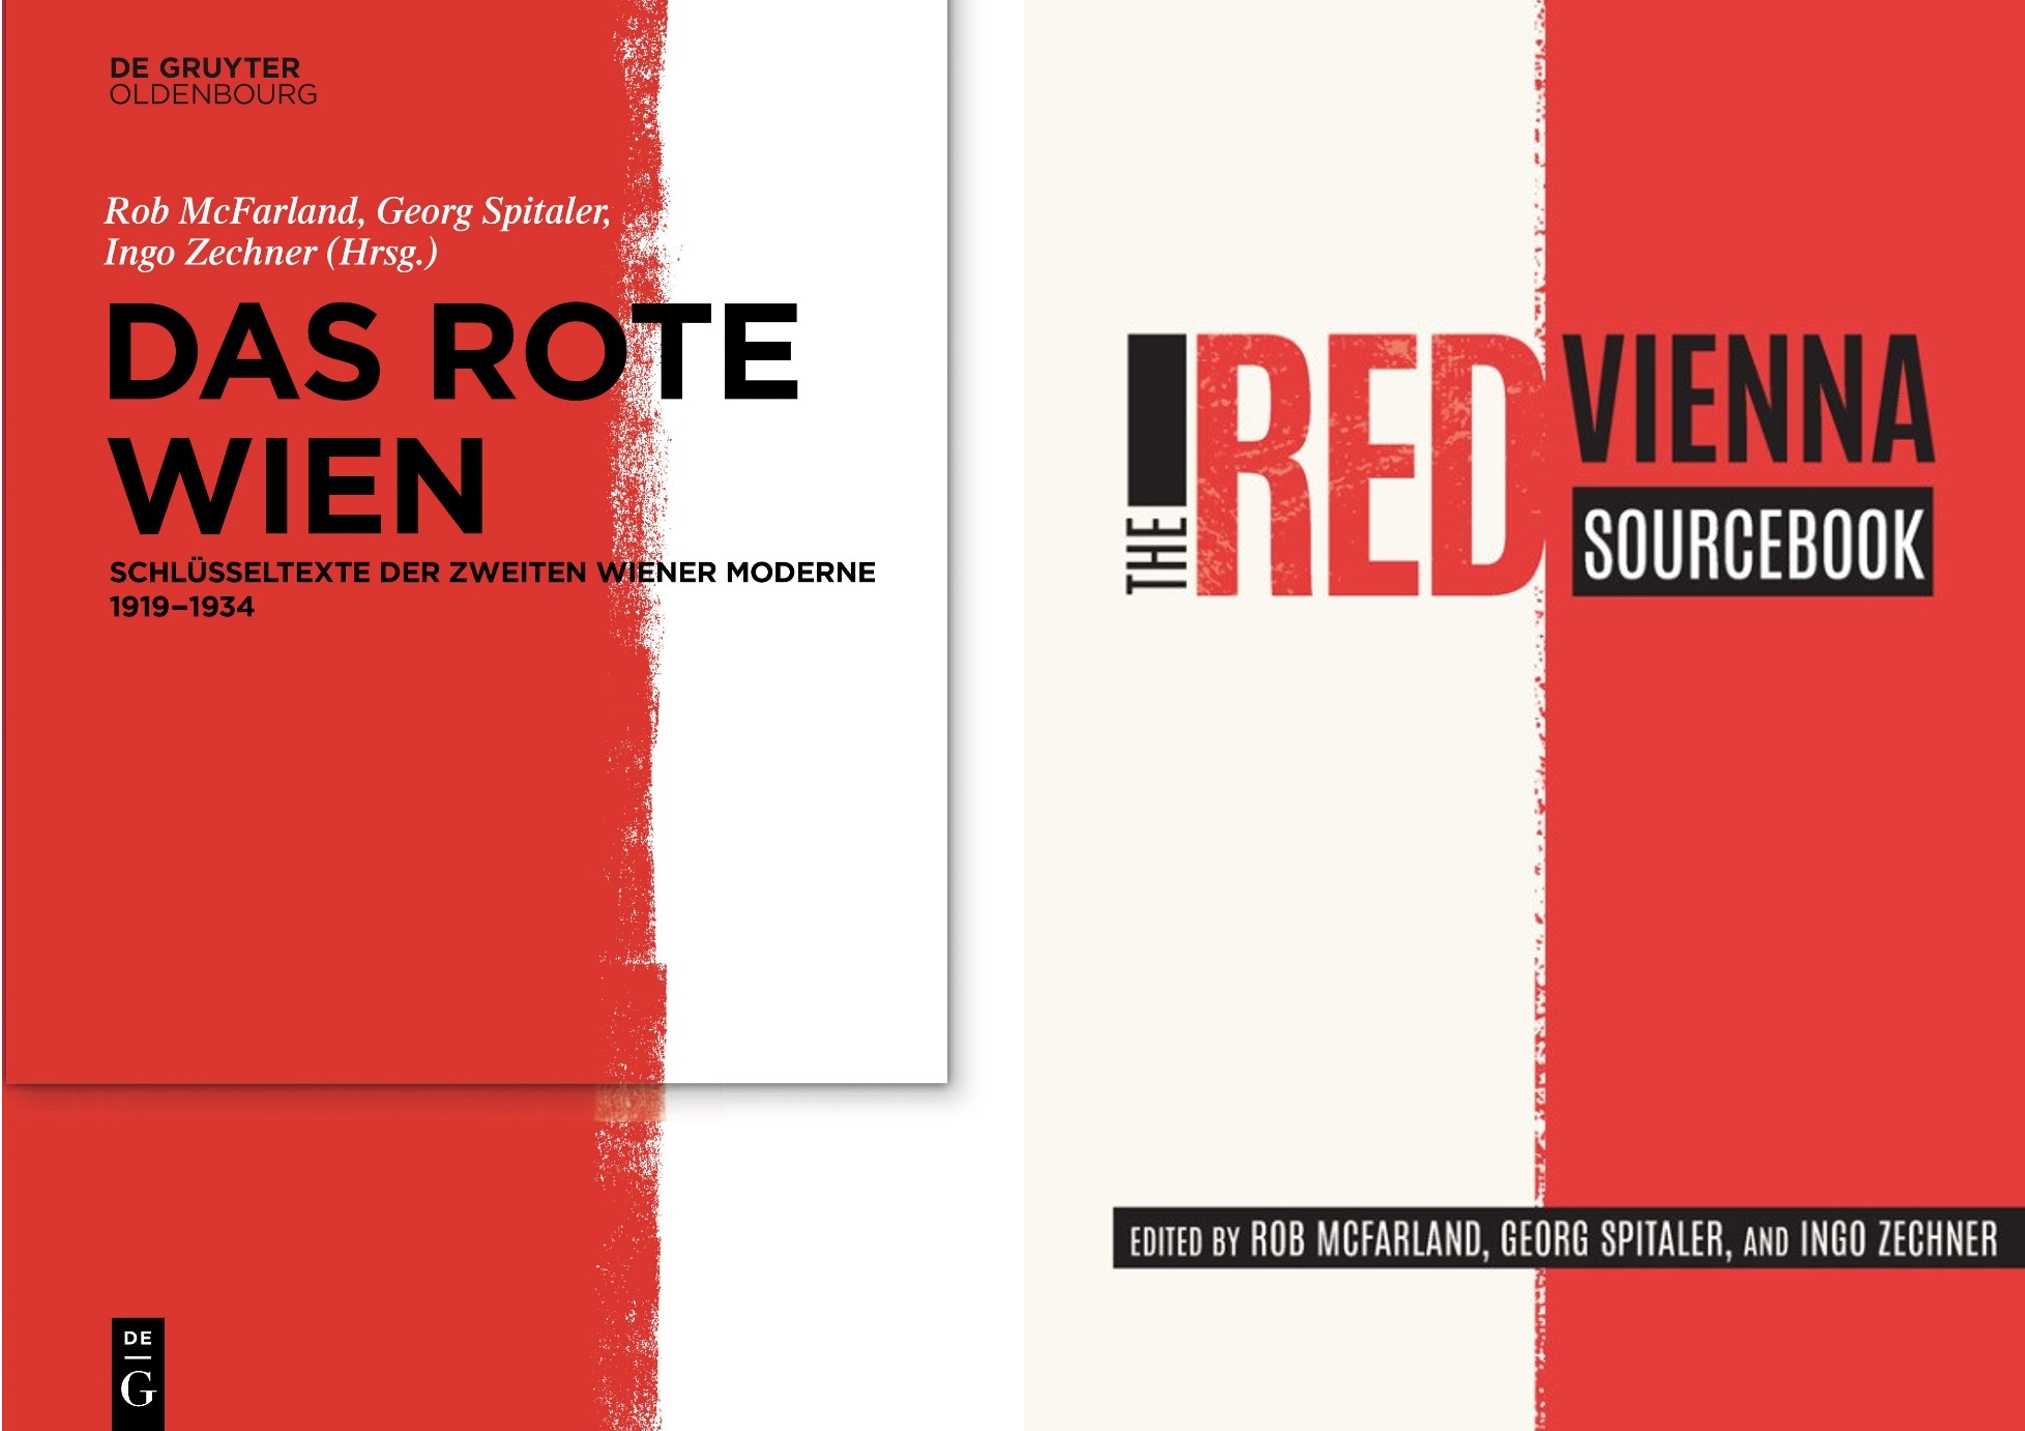 American Library Association Award für das Red Vienna Sourcebook